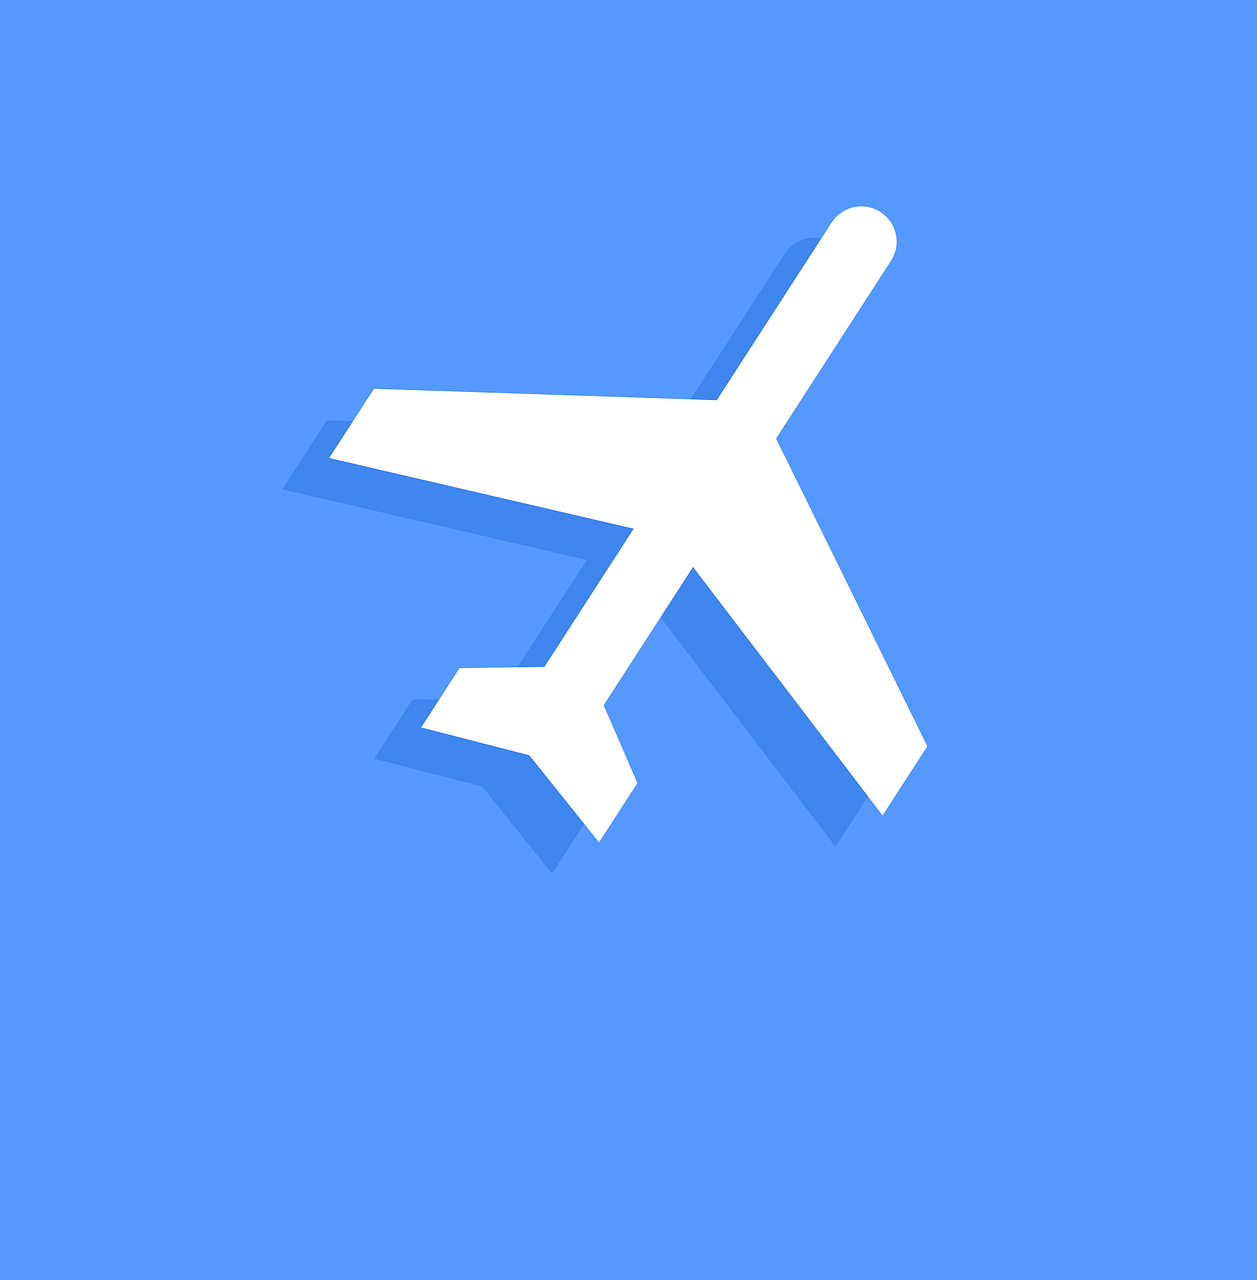 flight icon  icon  sign free photo